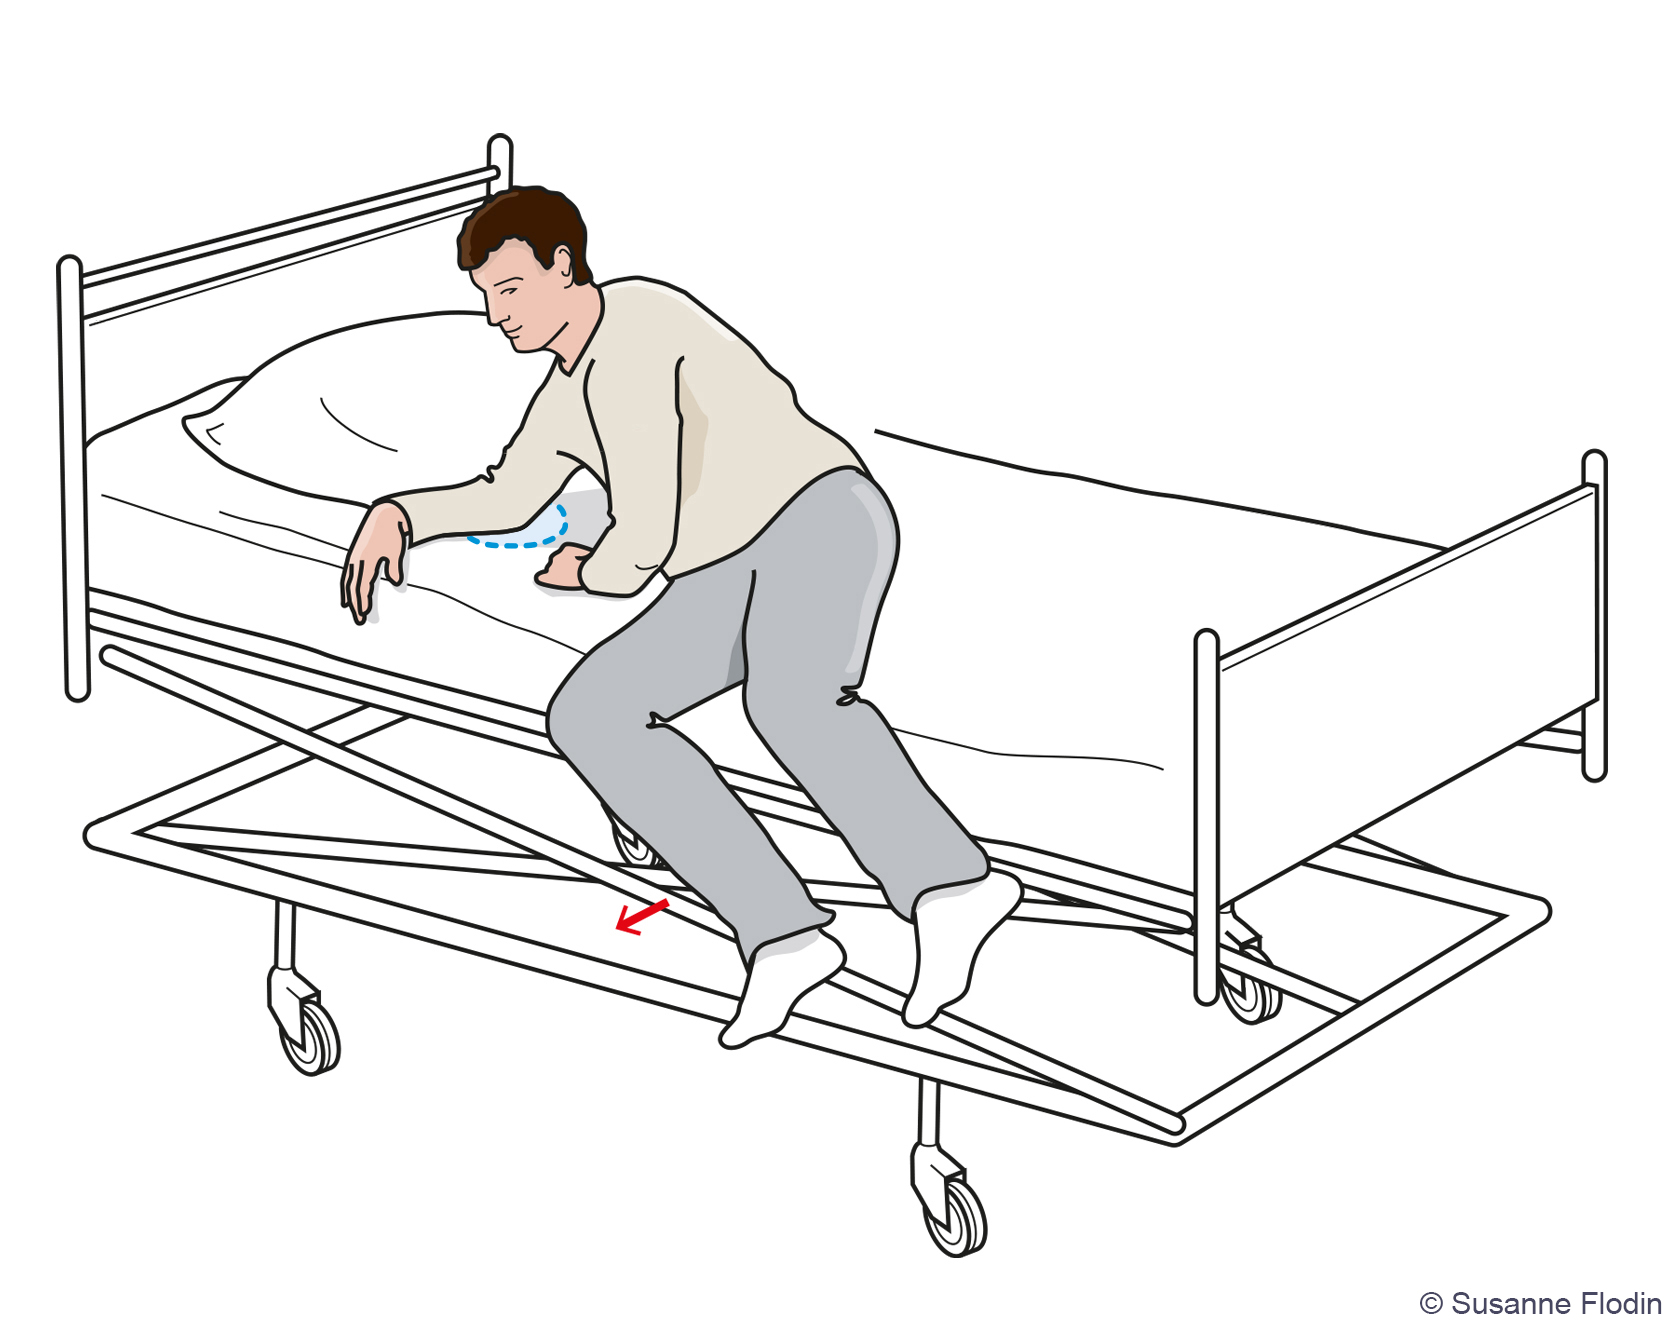 Bild som beskriver hur patienten reser sig upp från att ha legat på sidan och samtidigt för benen över sängkanten. 